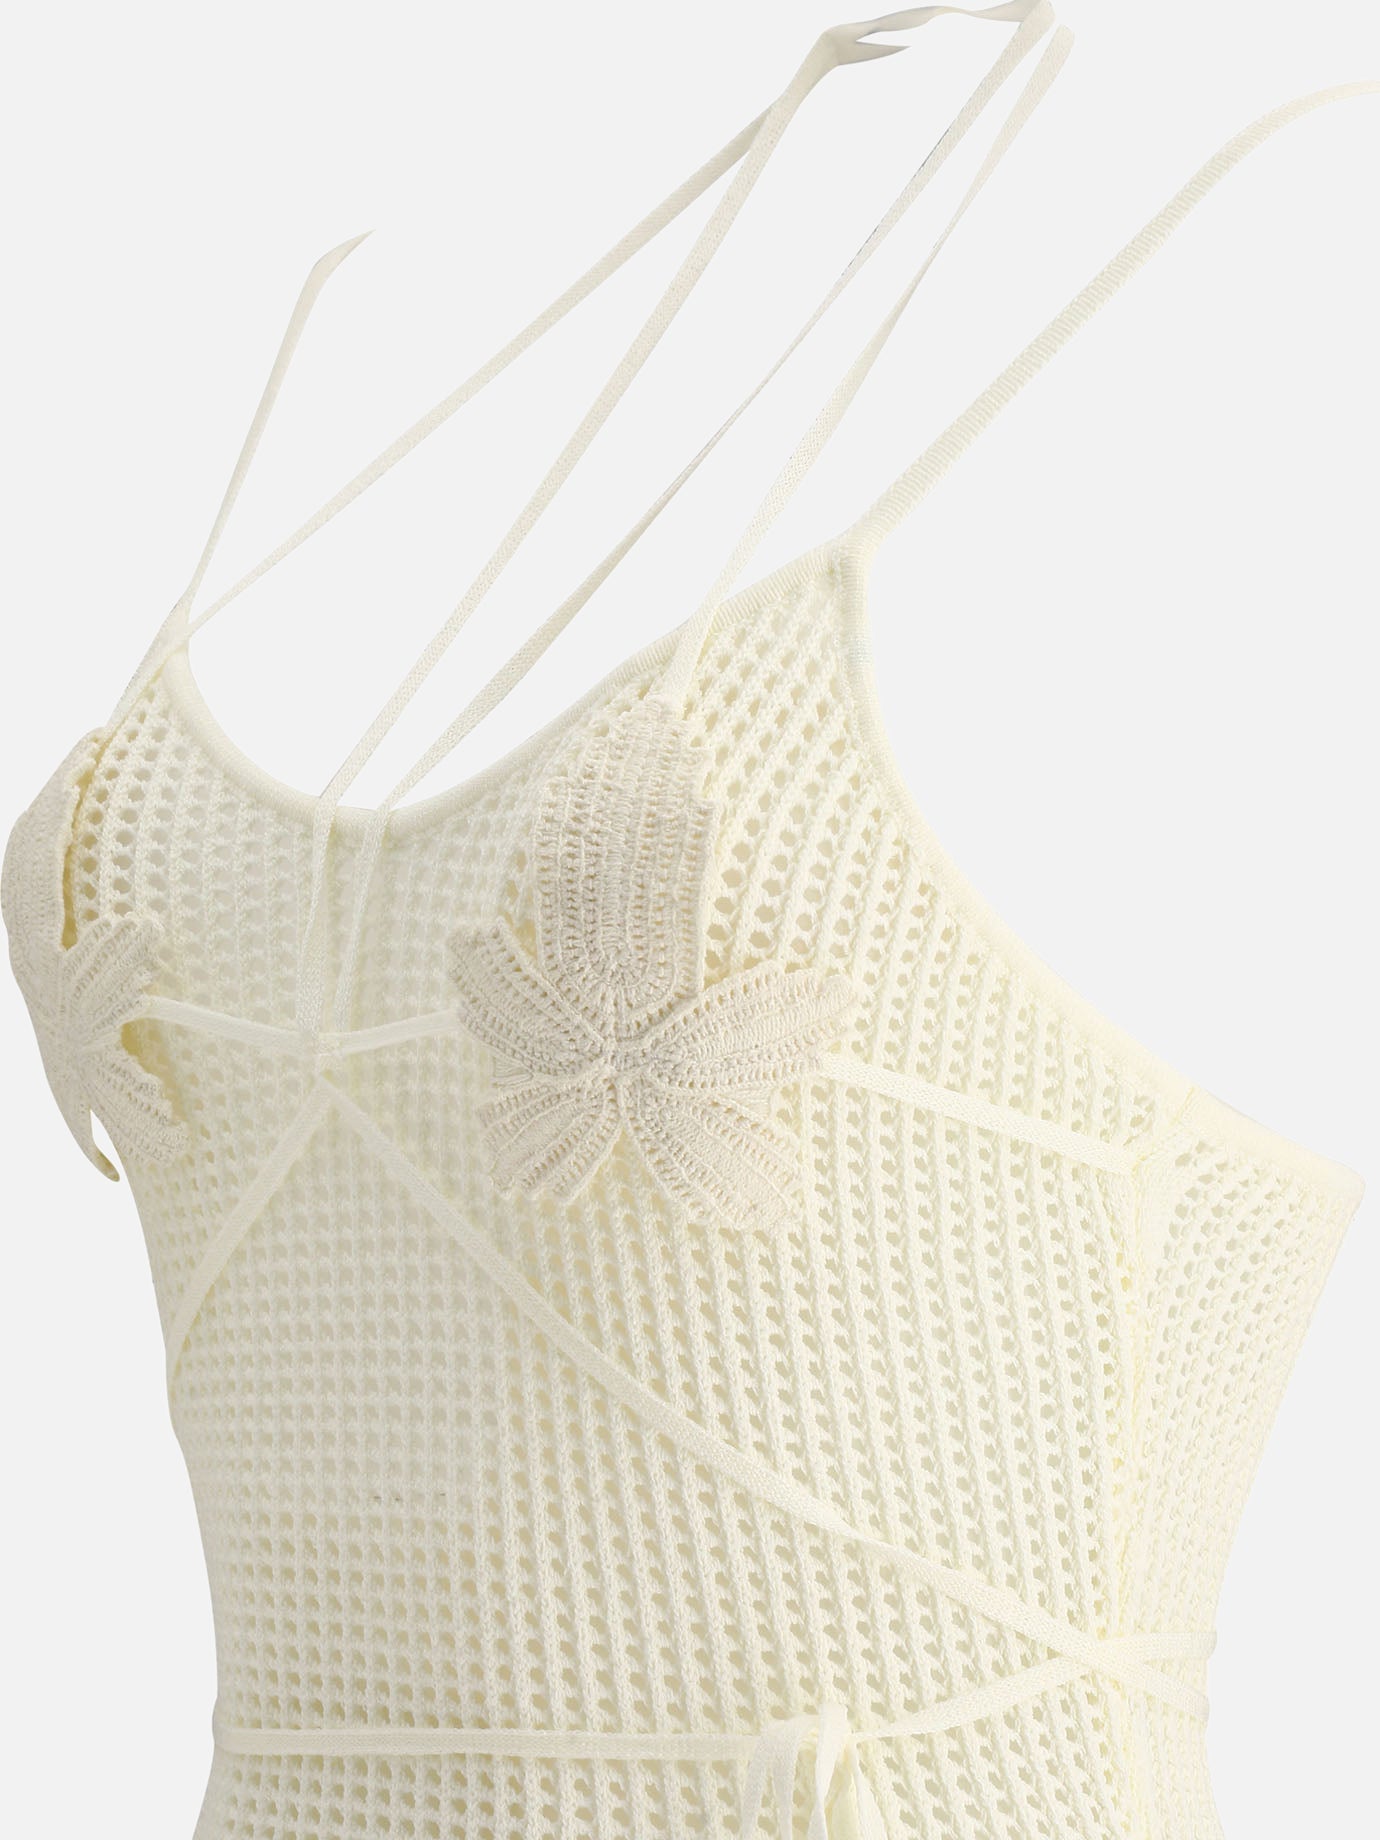 "Fishnet Knit Midi" dress